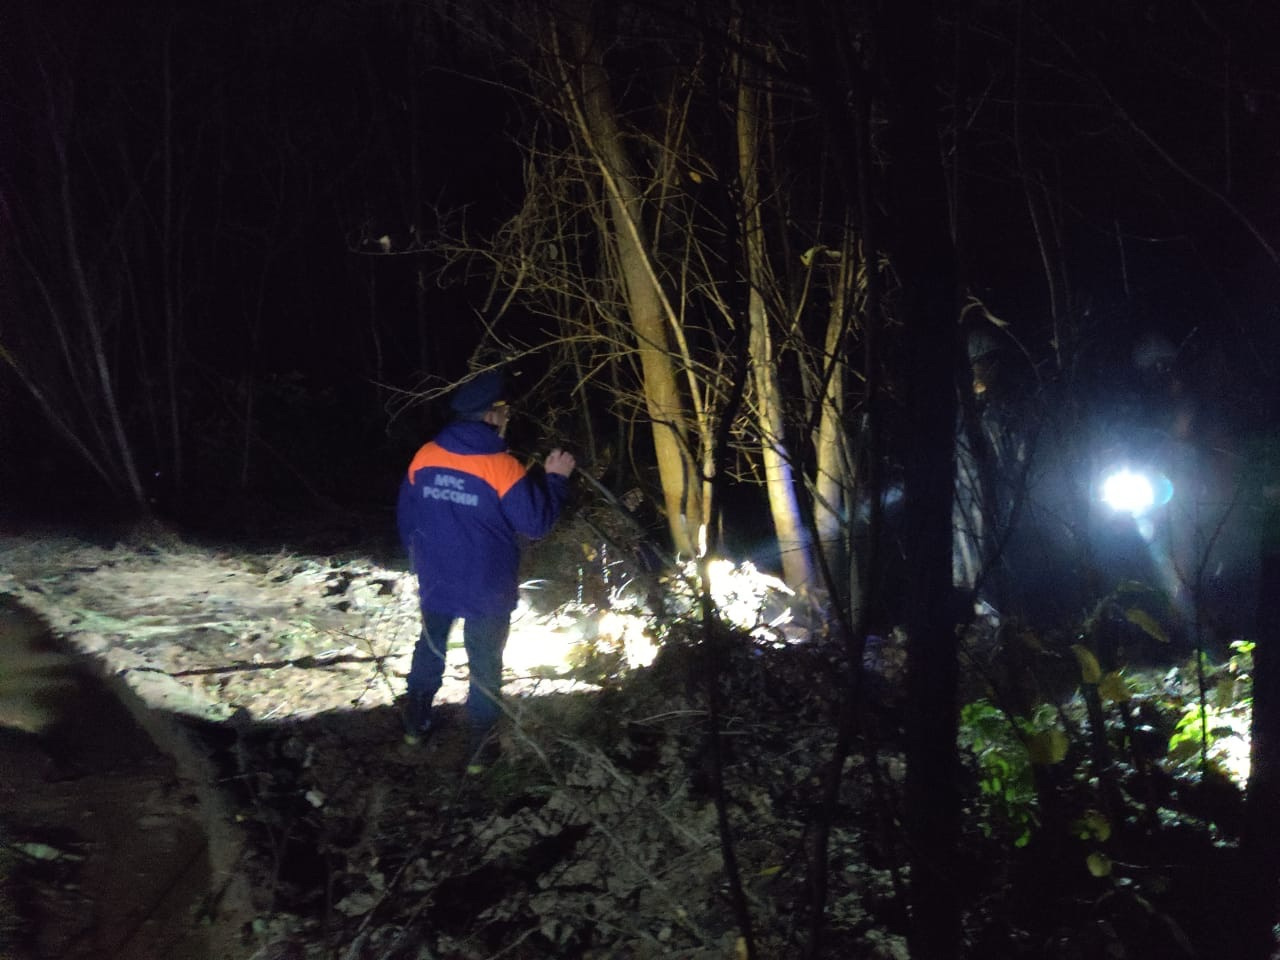 Еще одна фотография с места — спасатели обследуют лес вокруг предприятия, уточняют масштабы аварии